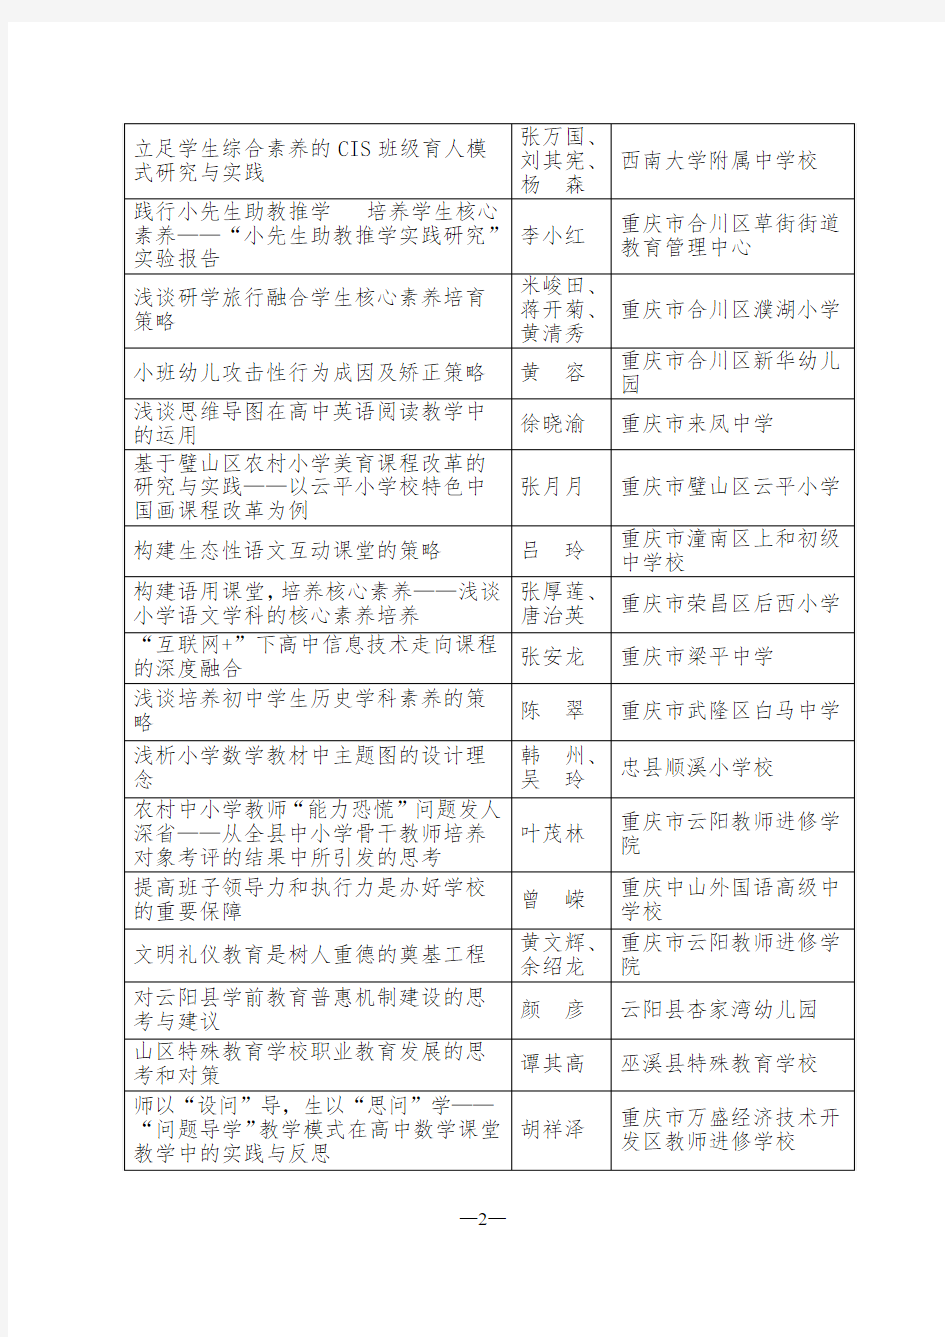 重庆中小学教师优秀教育教学论文评选获奖-重庆教育学会